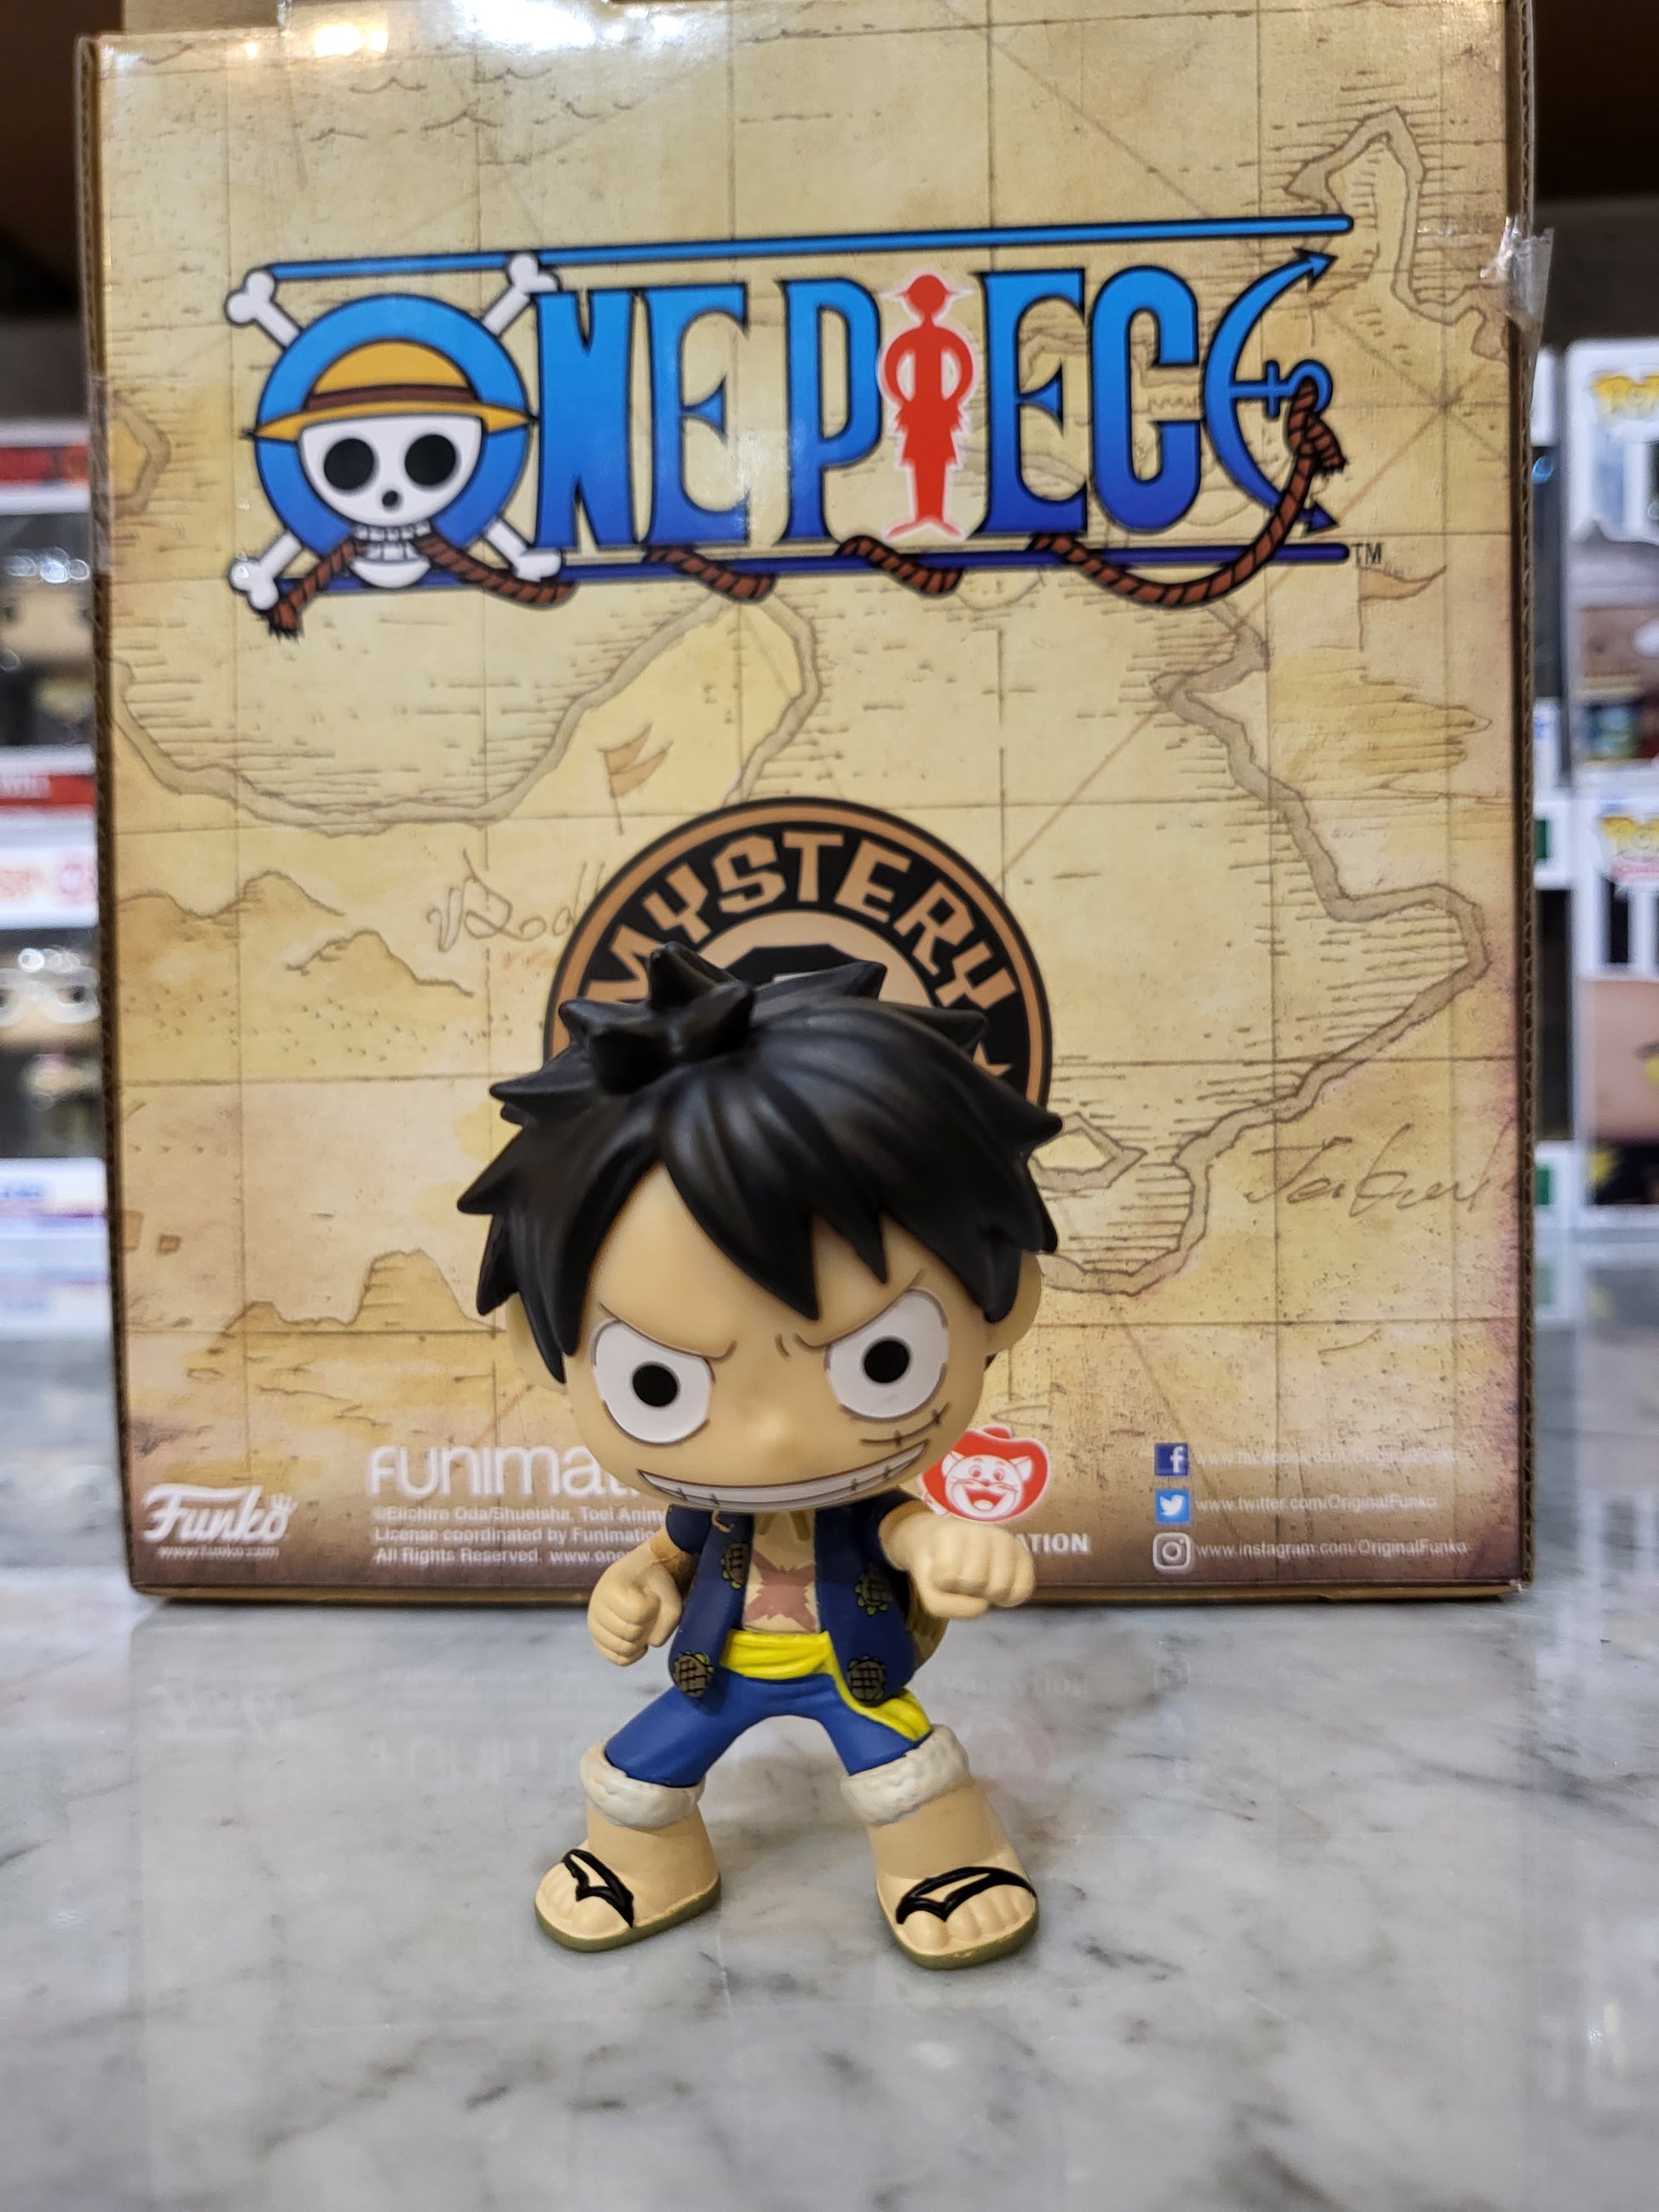 Buy One Piece Mini Vinyl Figures at Funko.